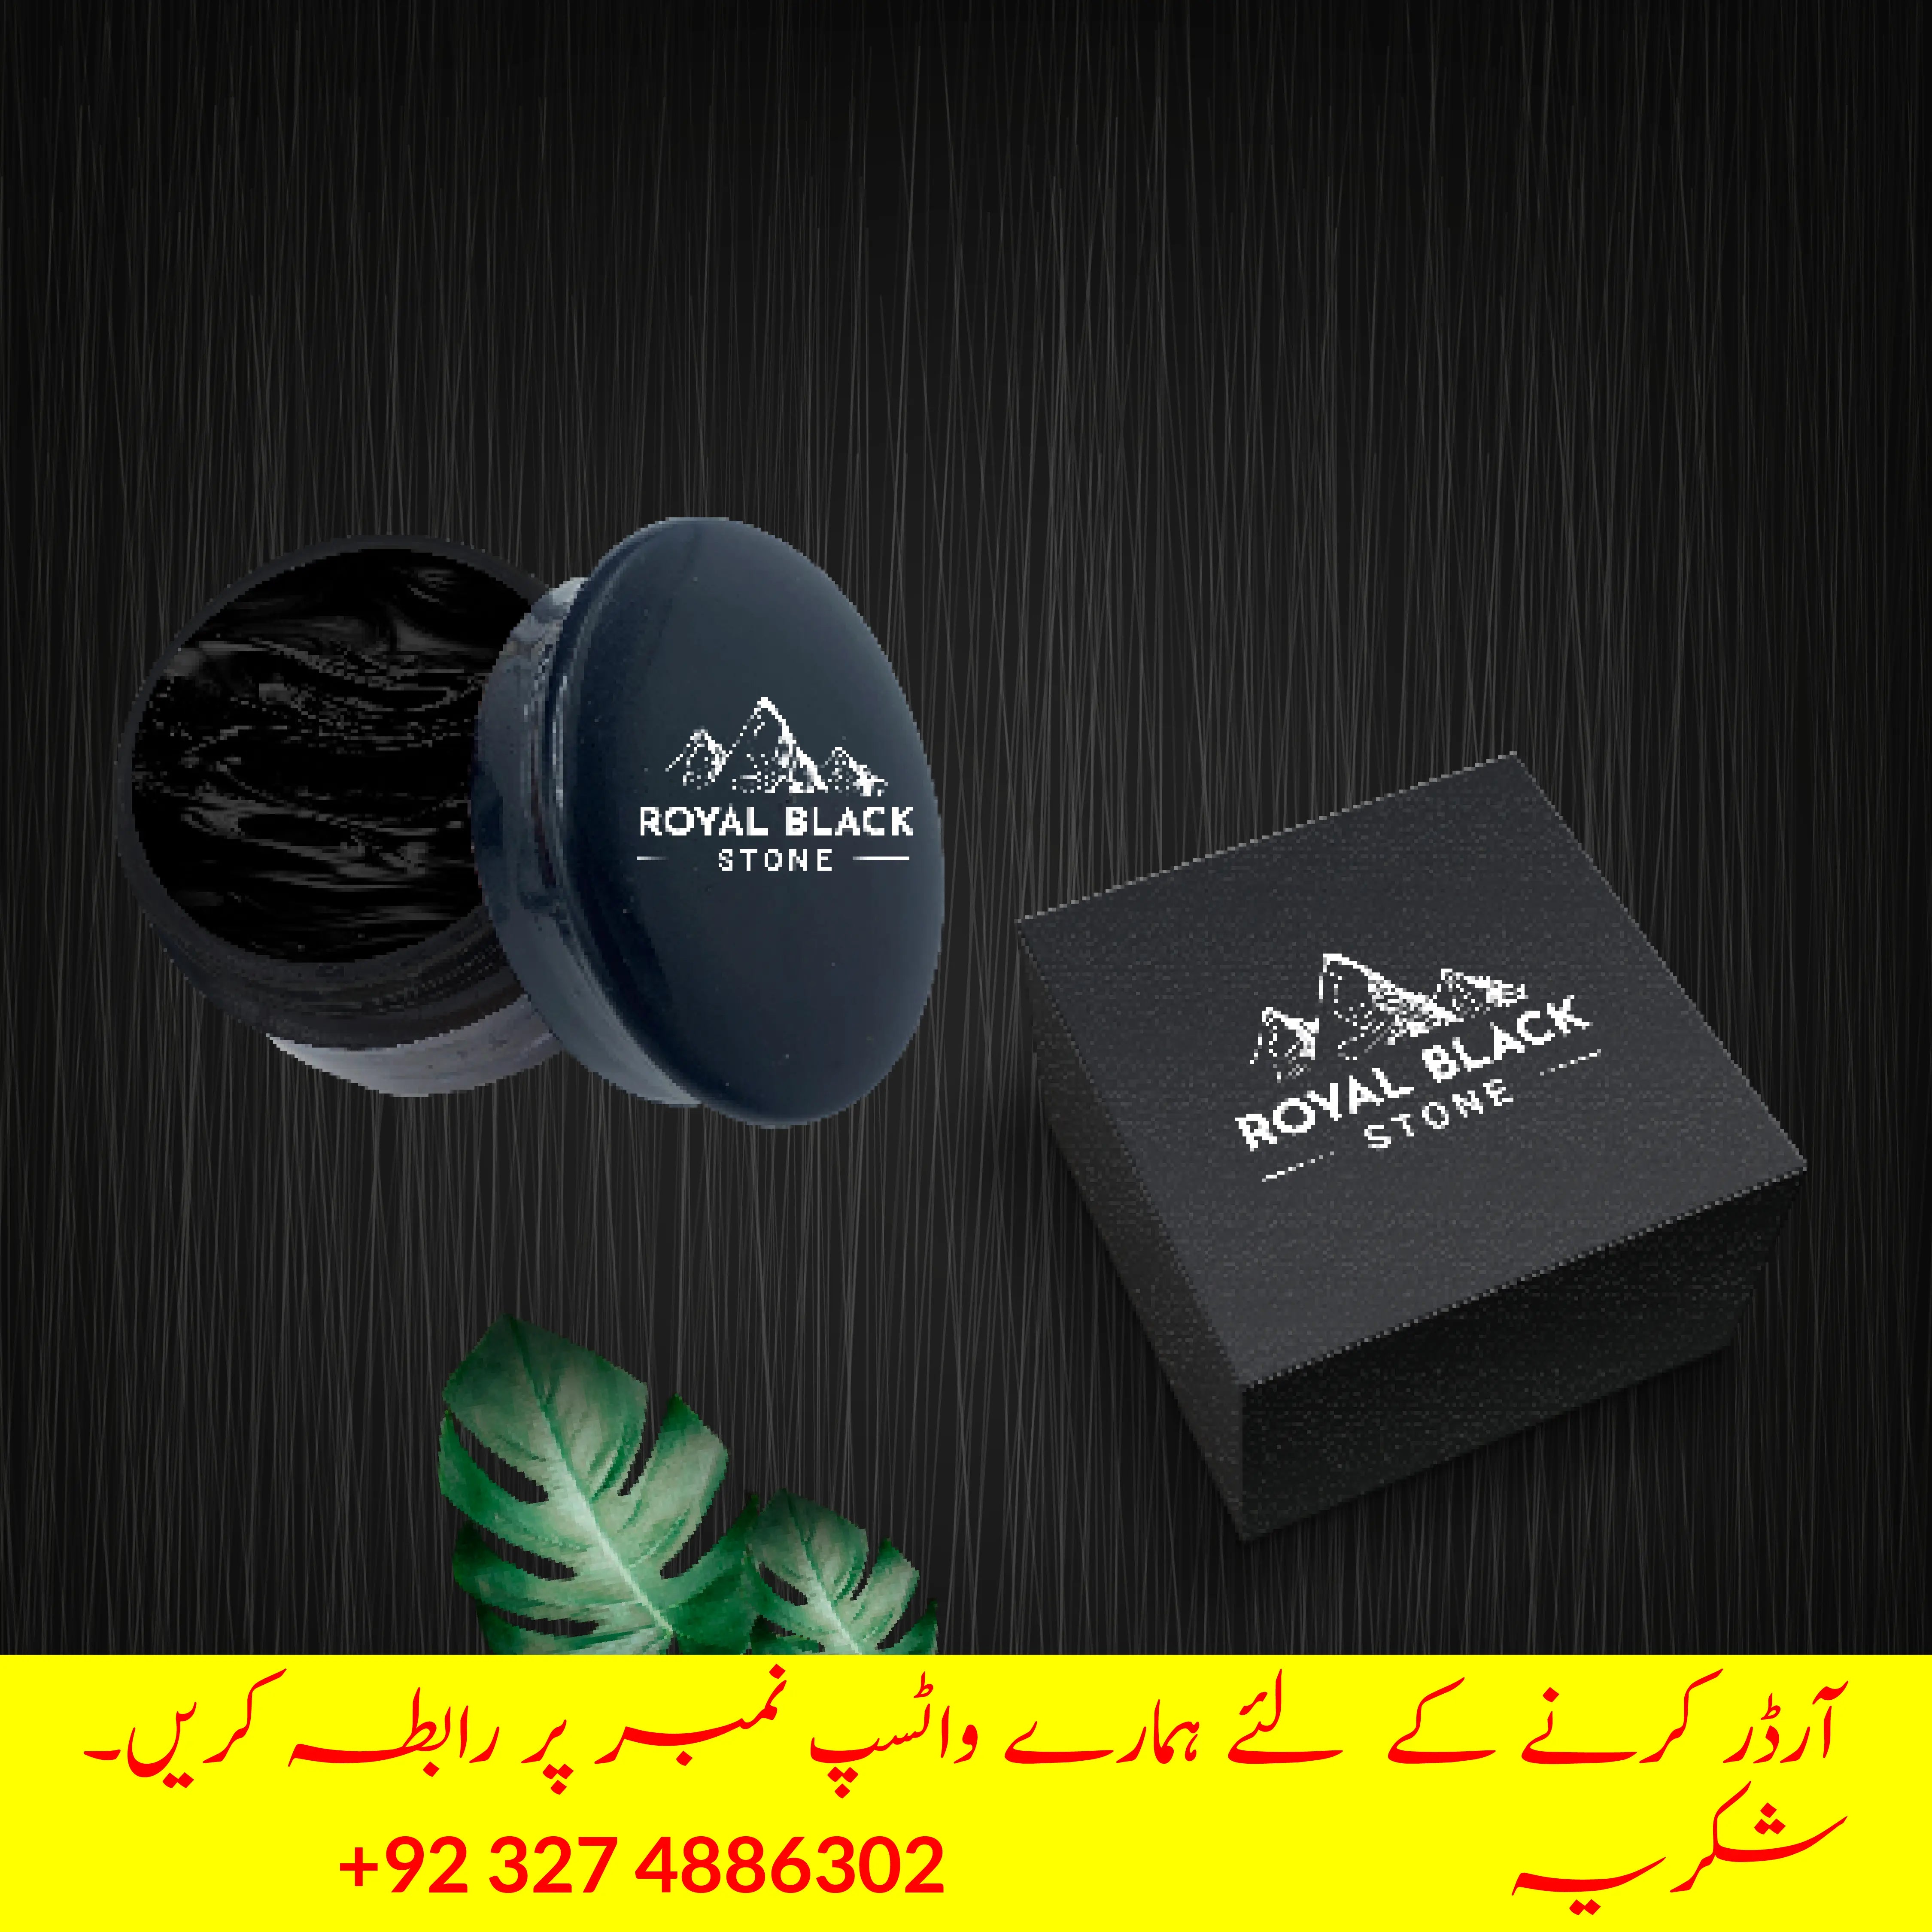 100% Pure Salajeet (Shilajit) Royal Black Stone